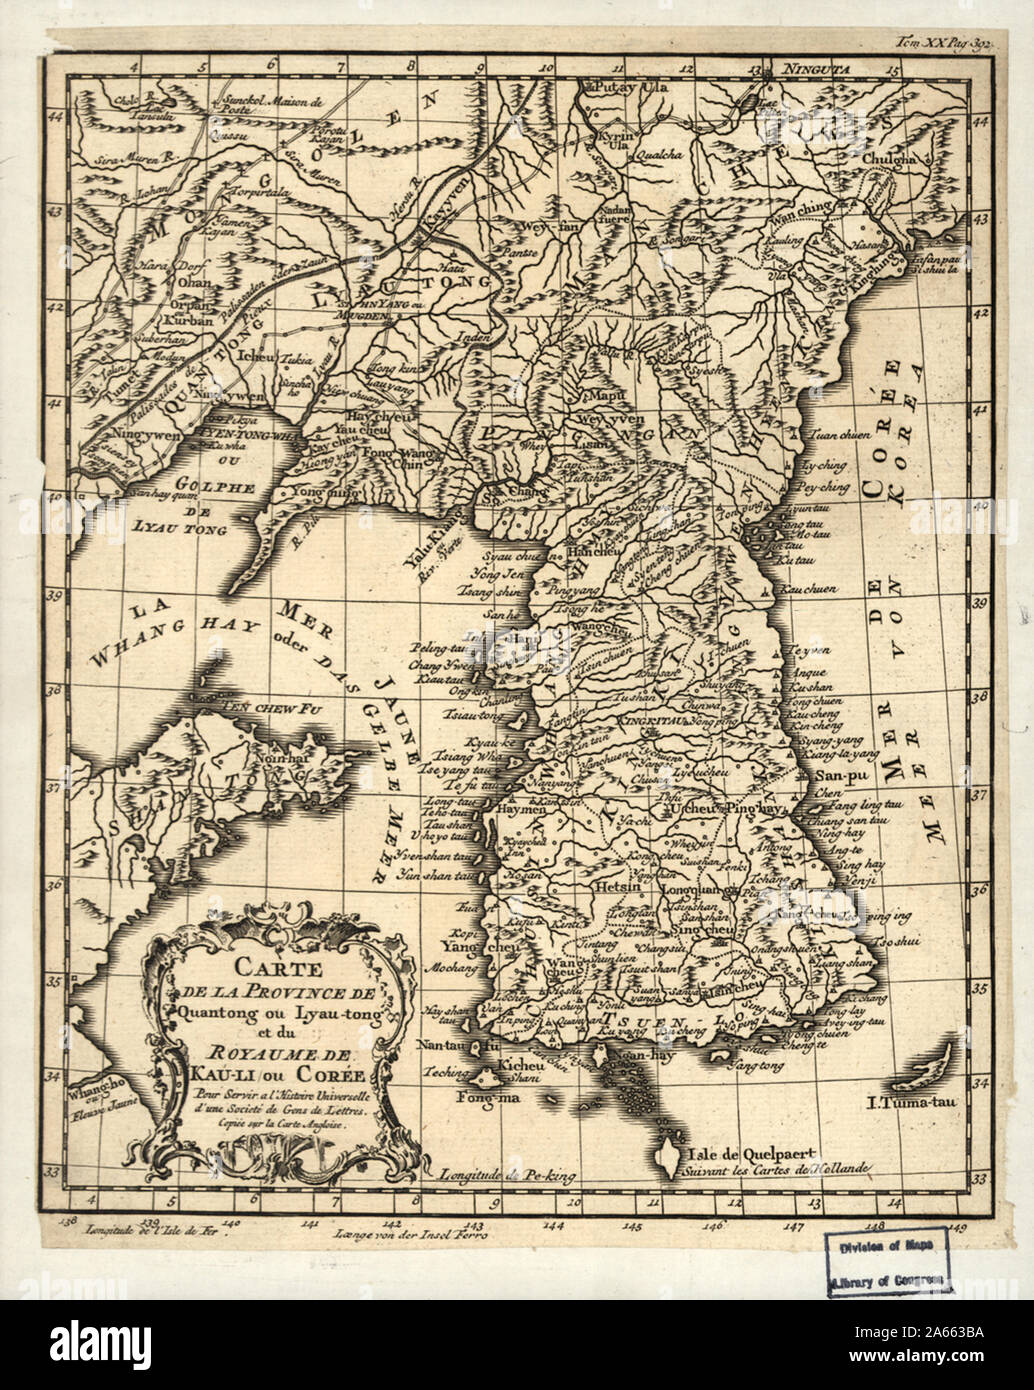 Karte von Quantong Provinz oder lyau-tong und des Königreichs Kau-li oder Korea - Für die universelle Geschichte von einer Gesellschaft, in der Männer von Buchstaben Stockfoto